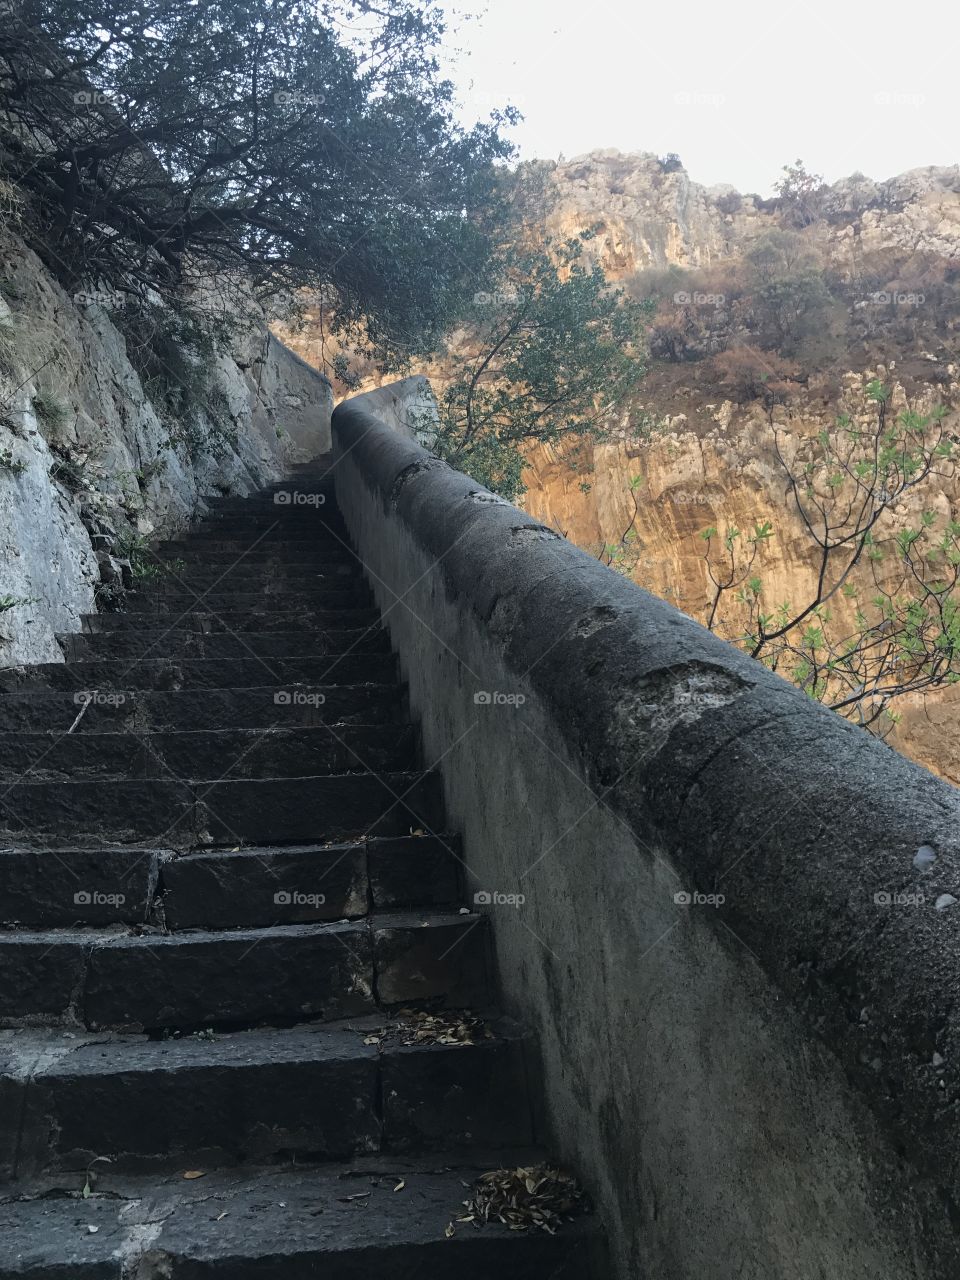 Phoenician steps